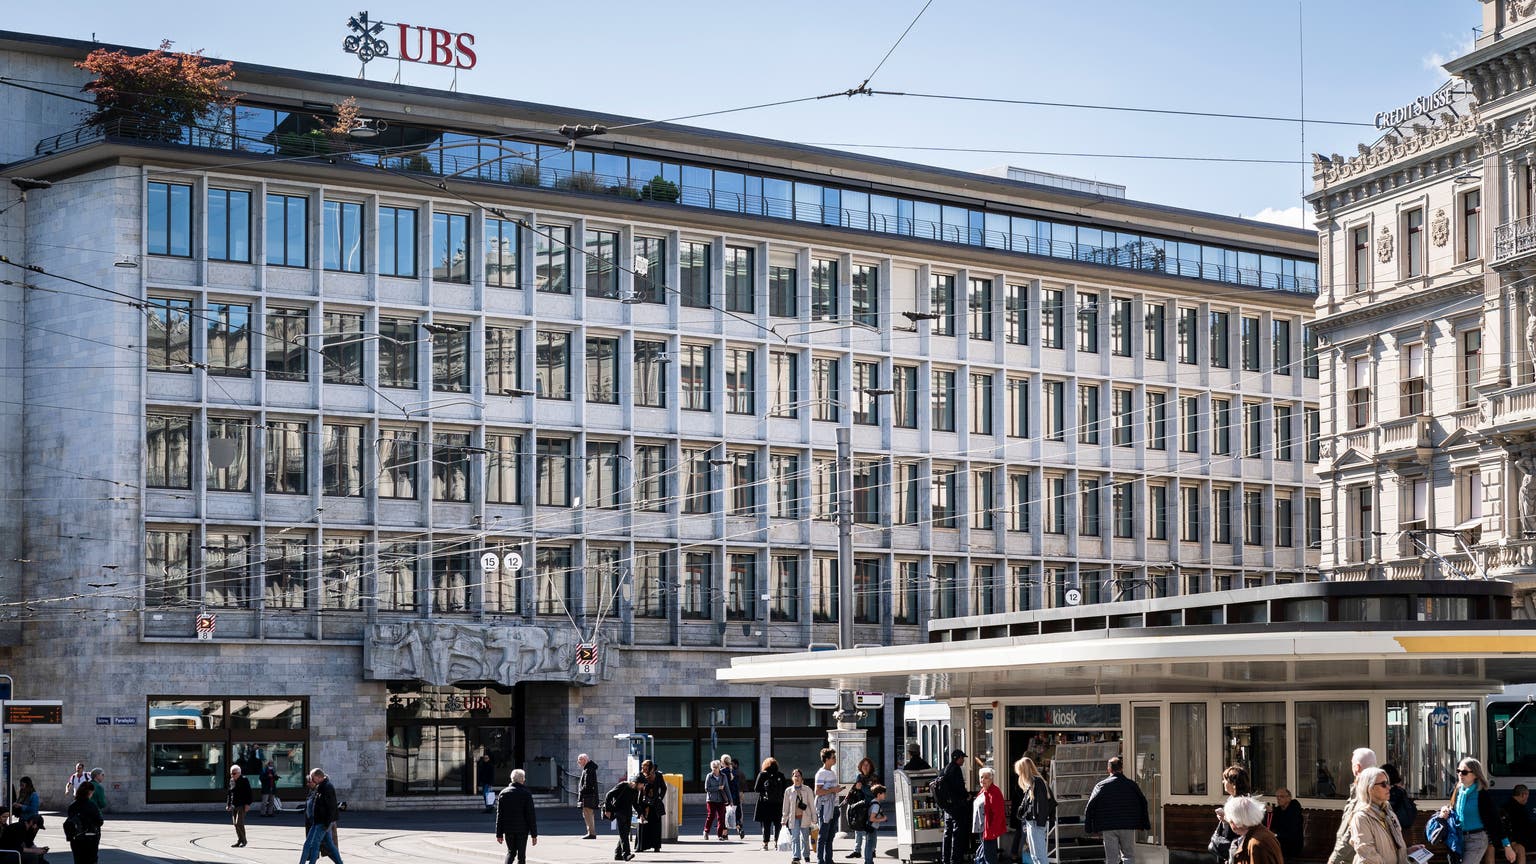 Zahlt einen Symbolpreis für die Credit Suisse: die UBS. (Bild: Andrea Zahler / CH Media)